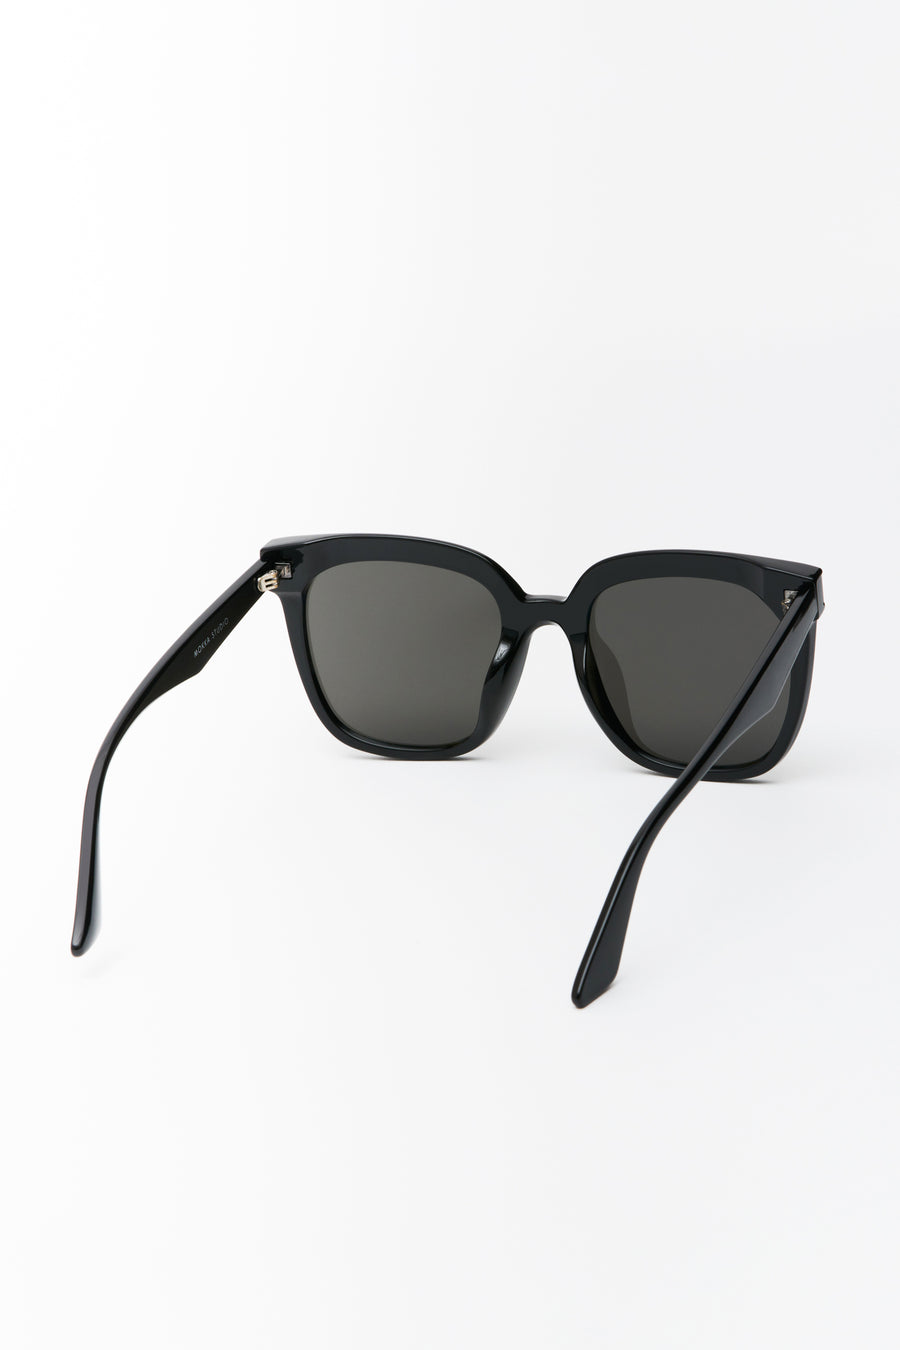 Hailey Large Rounded Sunglasses Black/Smoke Lens